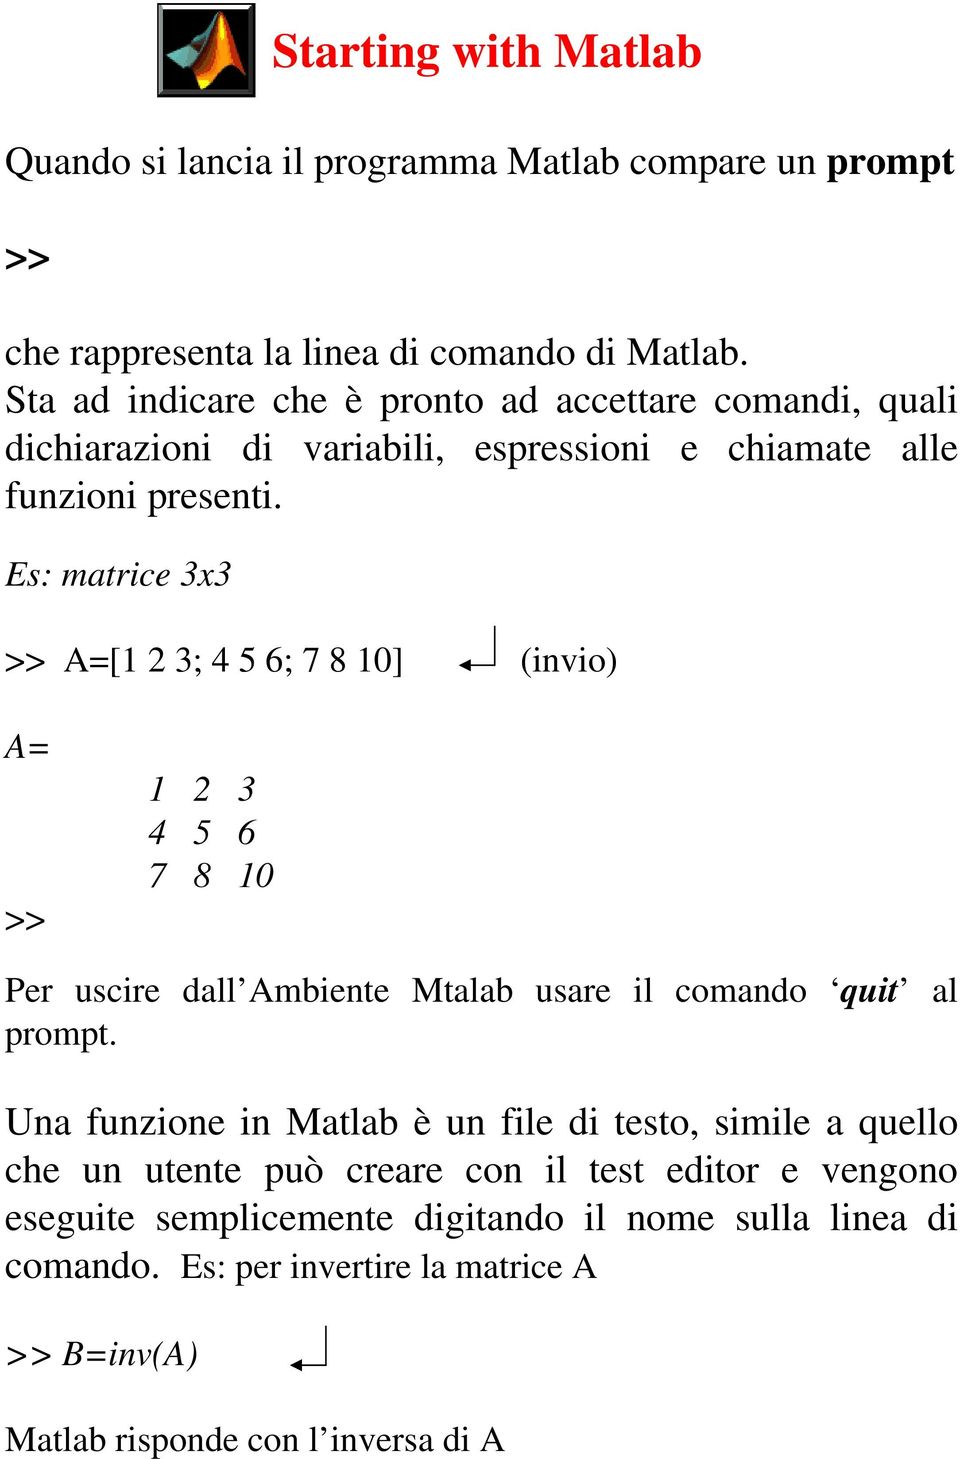 Es: matrice 3x3 >> A=[1 2 3; 4 5 6; 7 8 10] (invio) A= >> 1 2 3 4 5 6 7 8 10 Per uscire dall Ambiente Mtalab usare il comando quit al prompt.